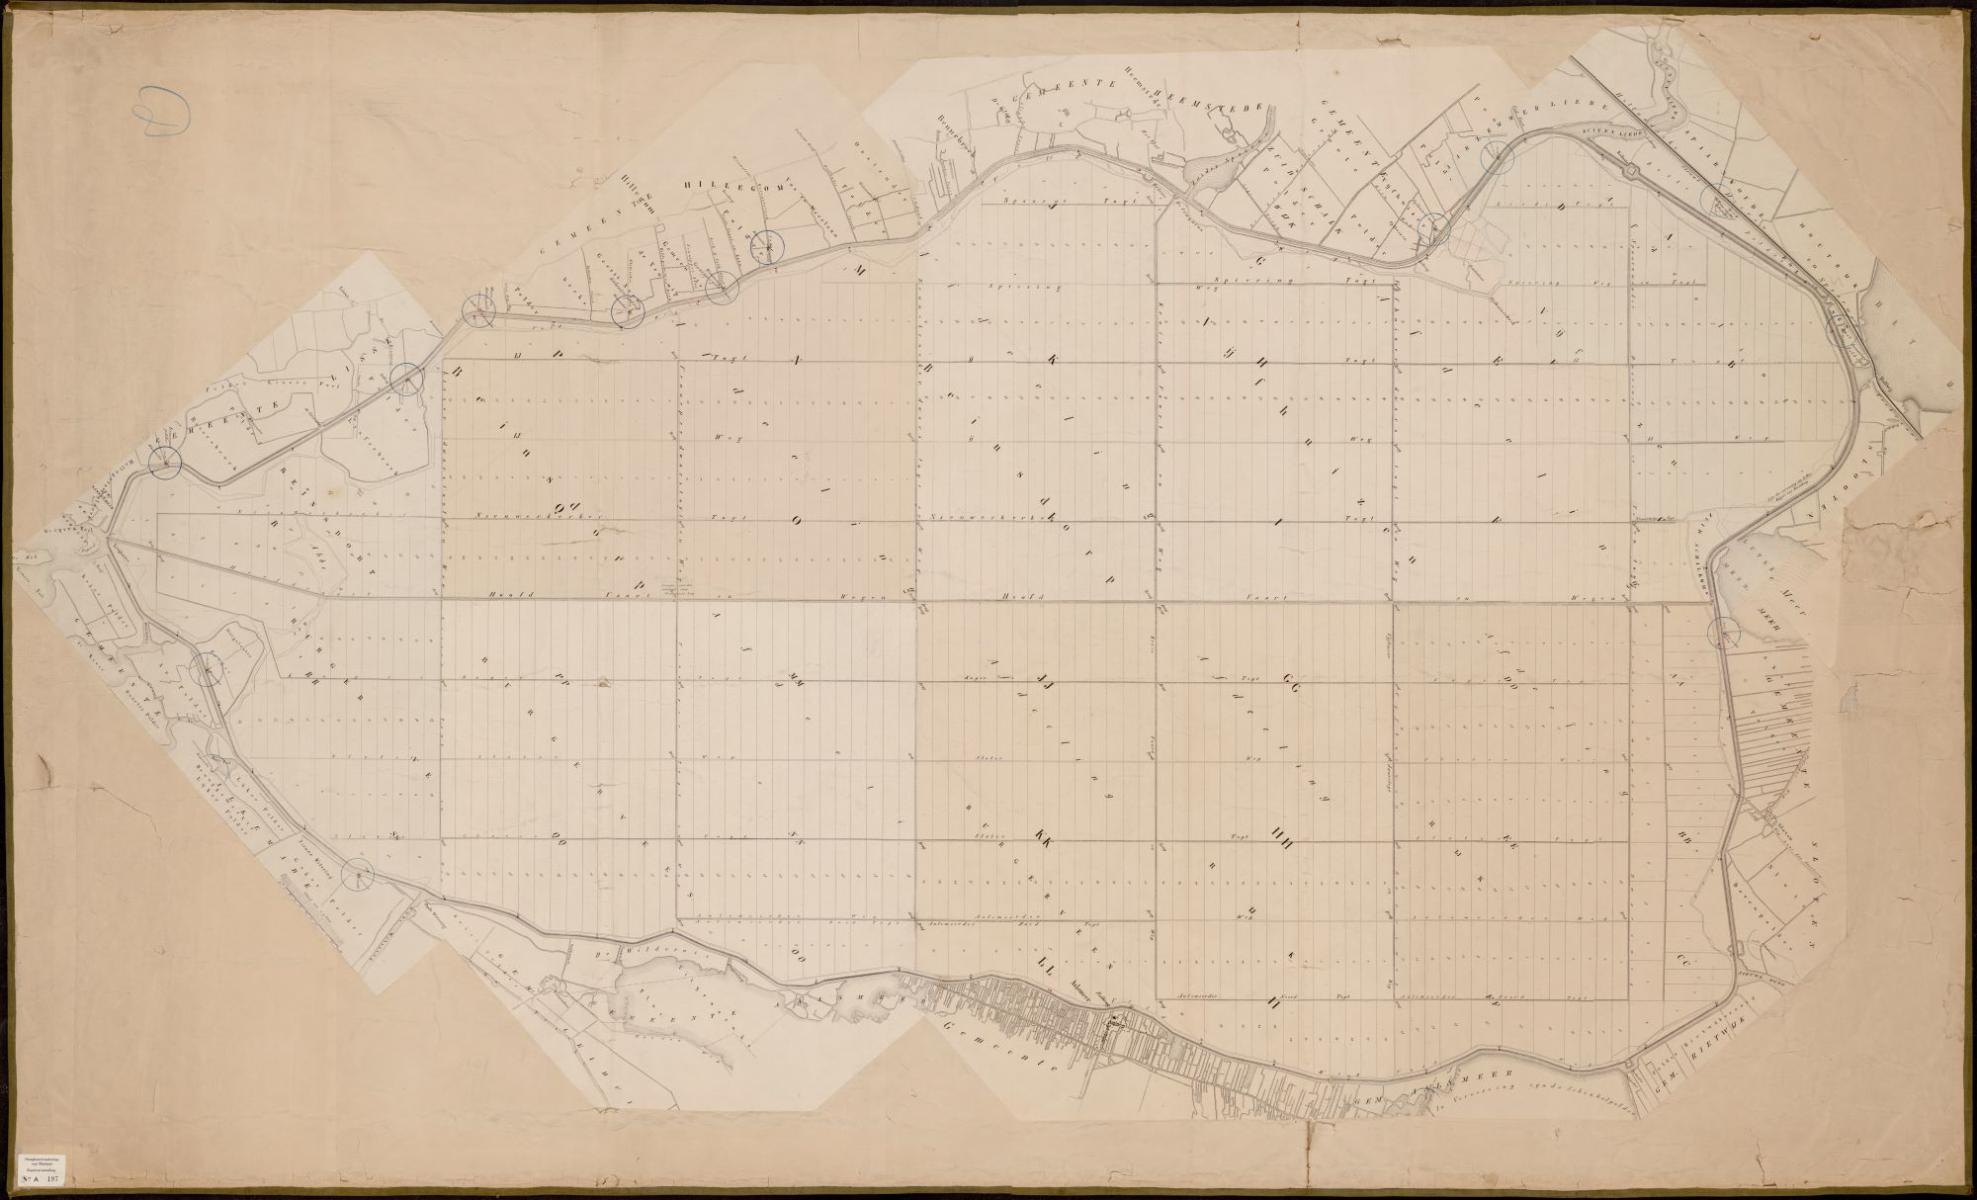 14. Kaart van de verkaveling van de Haarlemmermeerpolder 1855